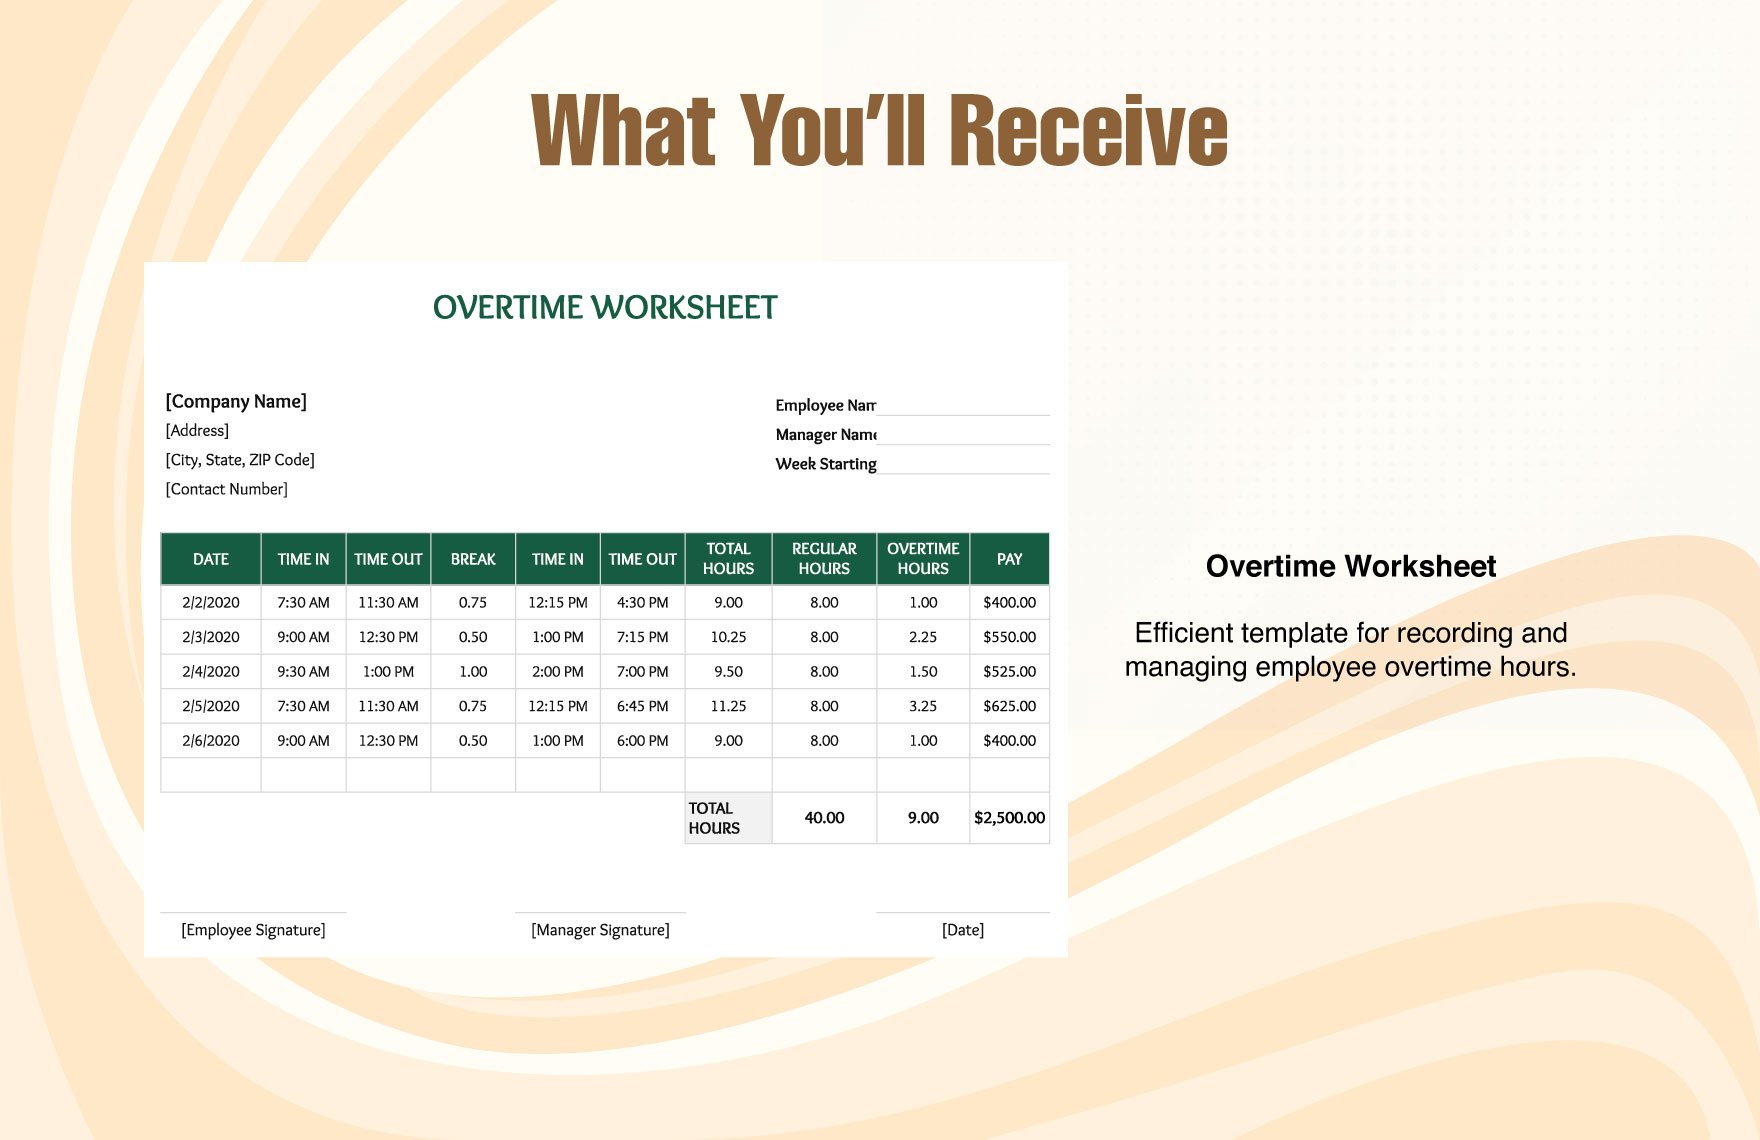 Overtime Worksheet Template